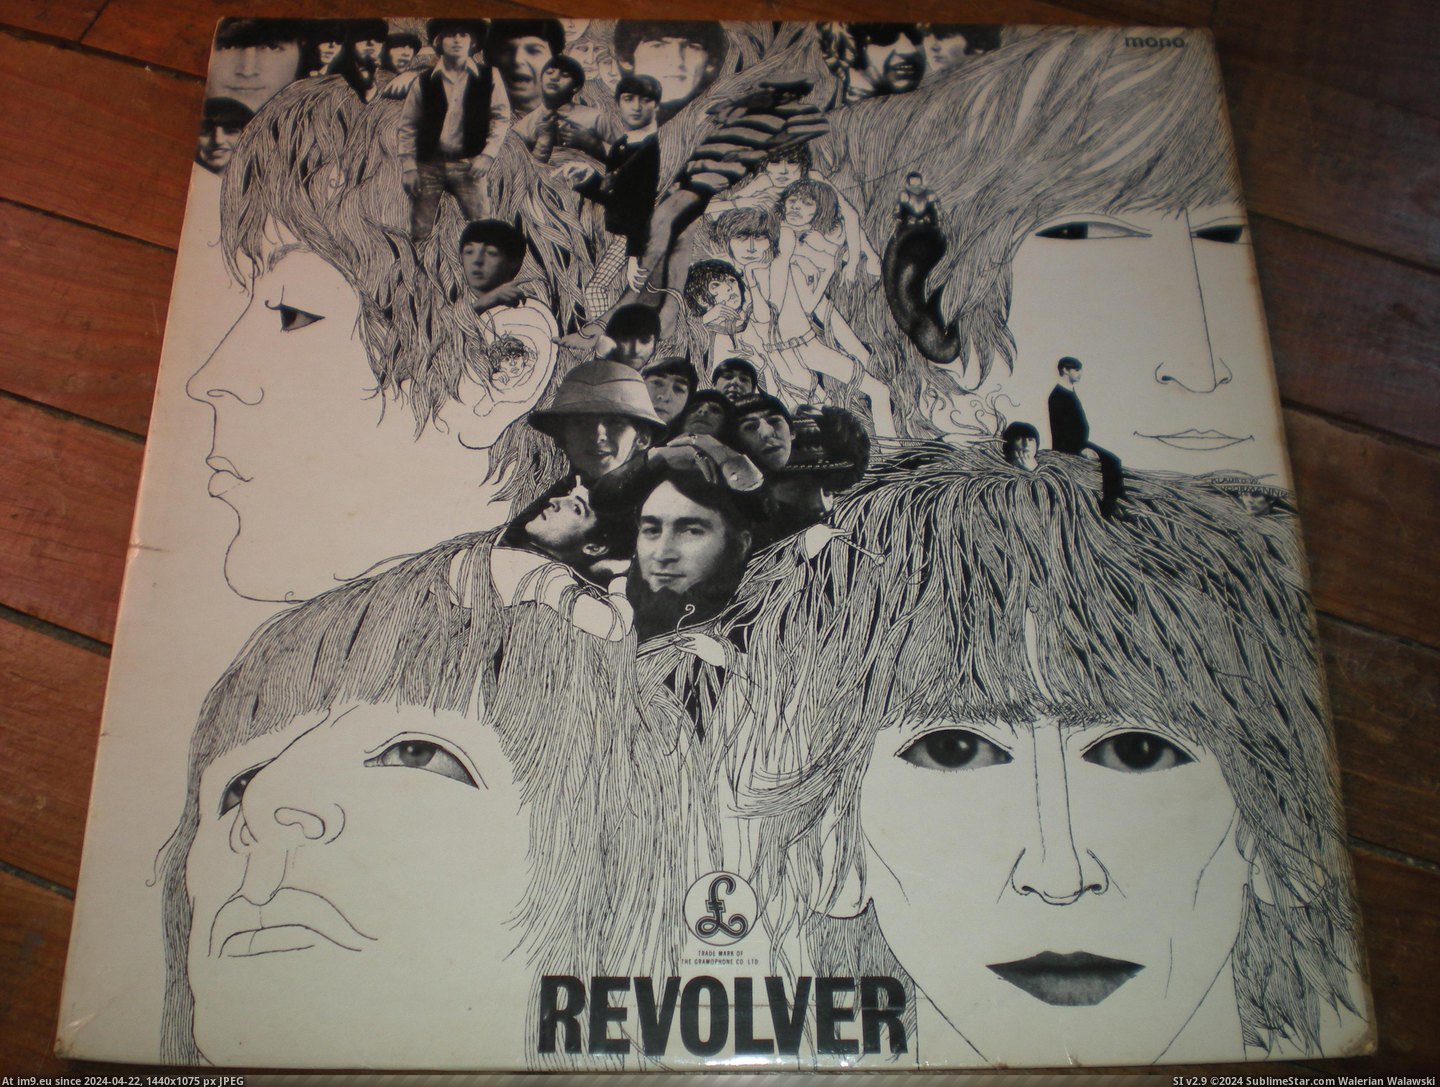  #Revolver6  Revolver6 Pic. (Bild von album new 1))